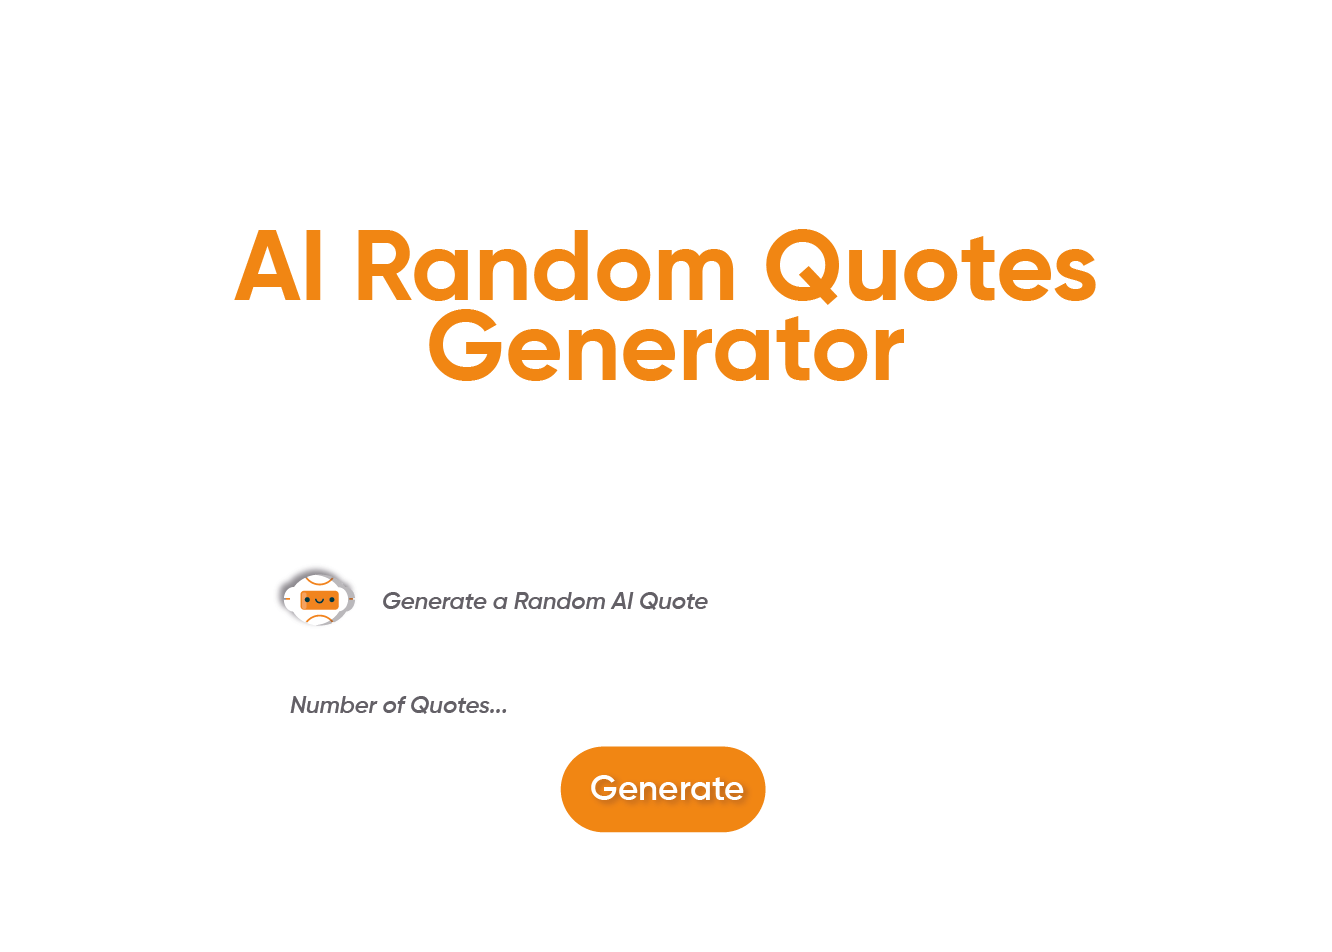 Ettvi’s AI Random Quote Generator Tool